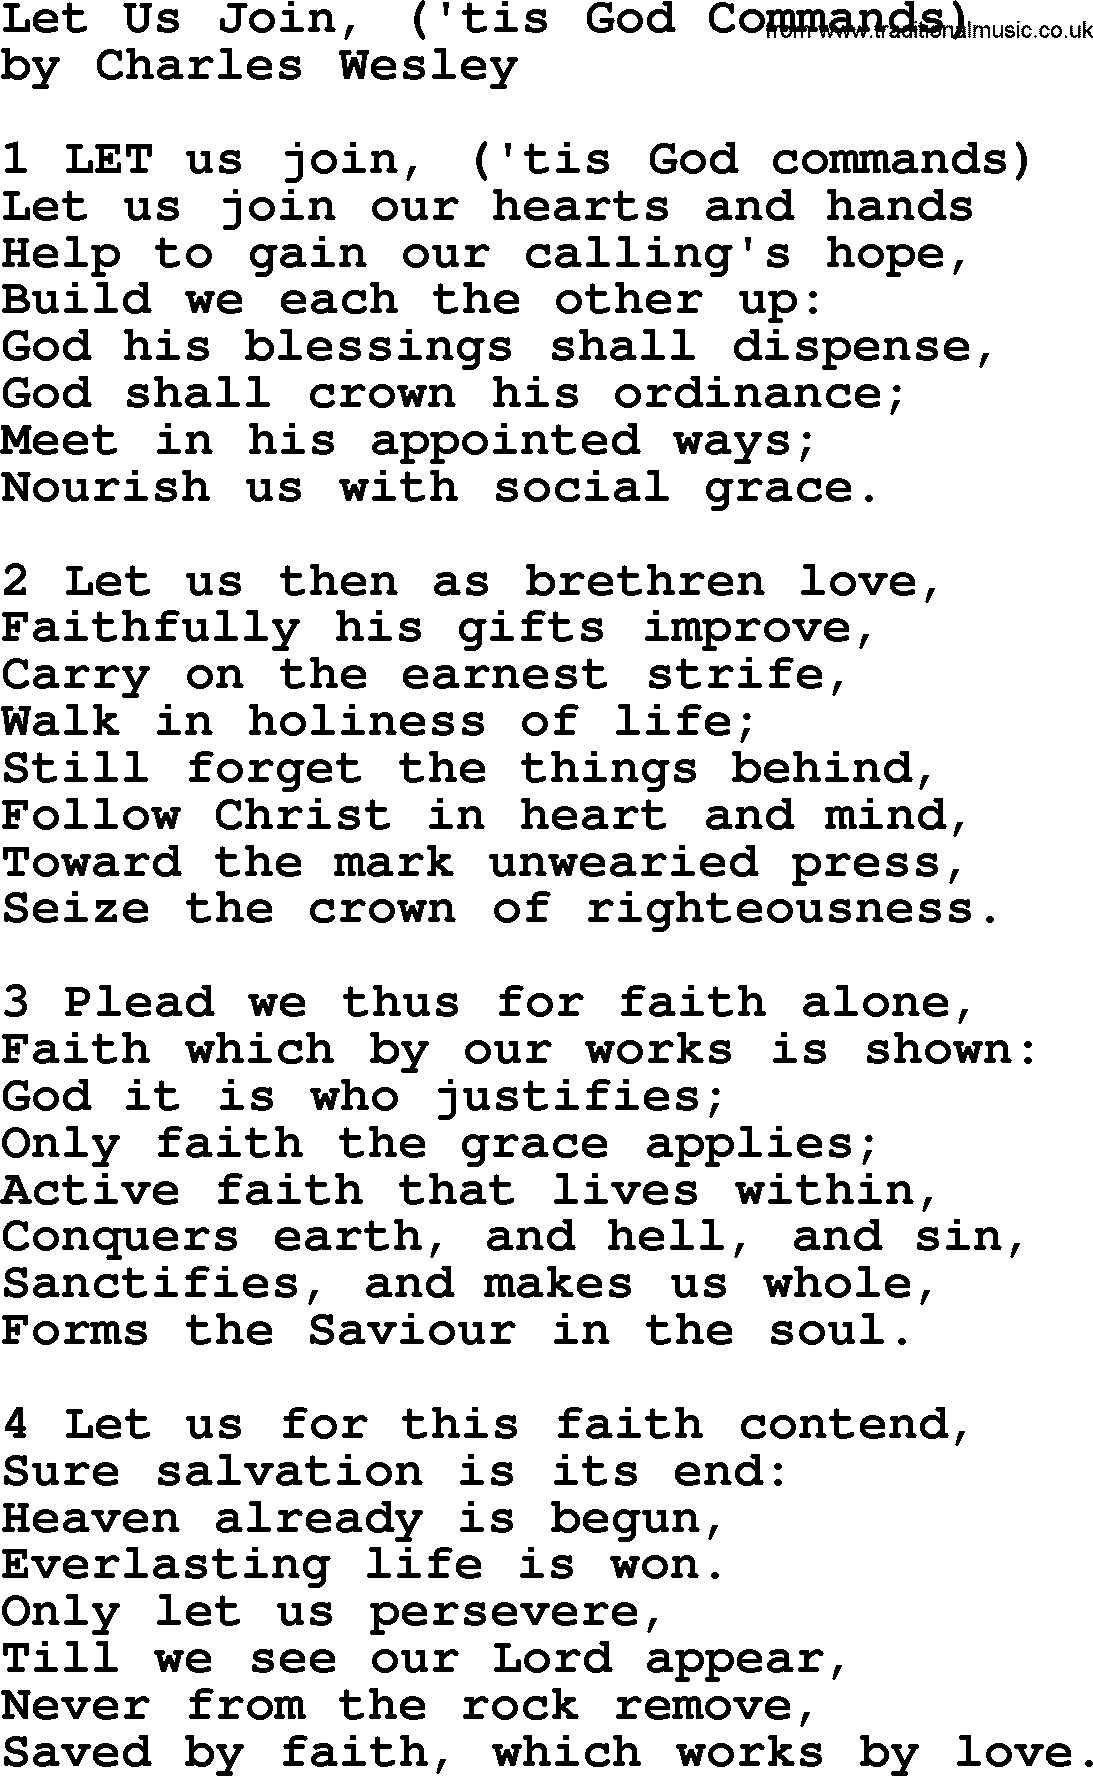 Charles Wesley hymn: Let Us Join, ('tis God Commands), lyrics